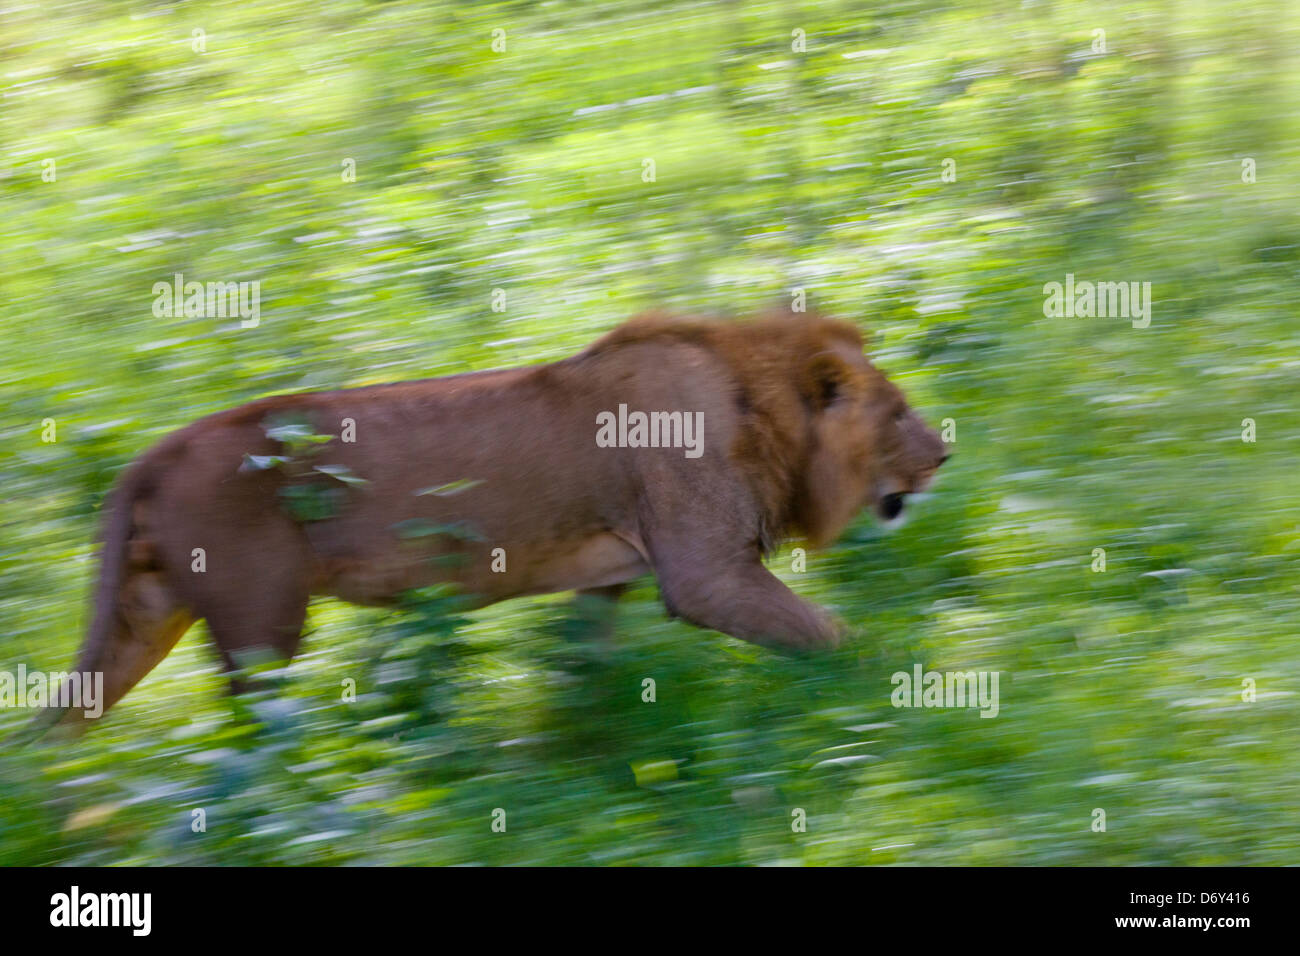 Lion, Nakuru, Kenya Stock Photo